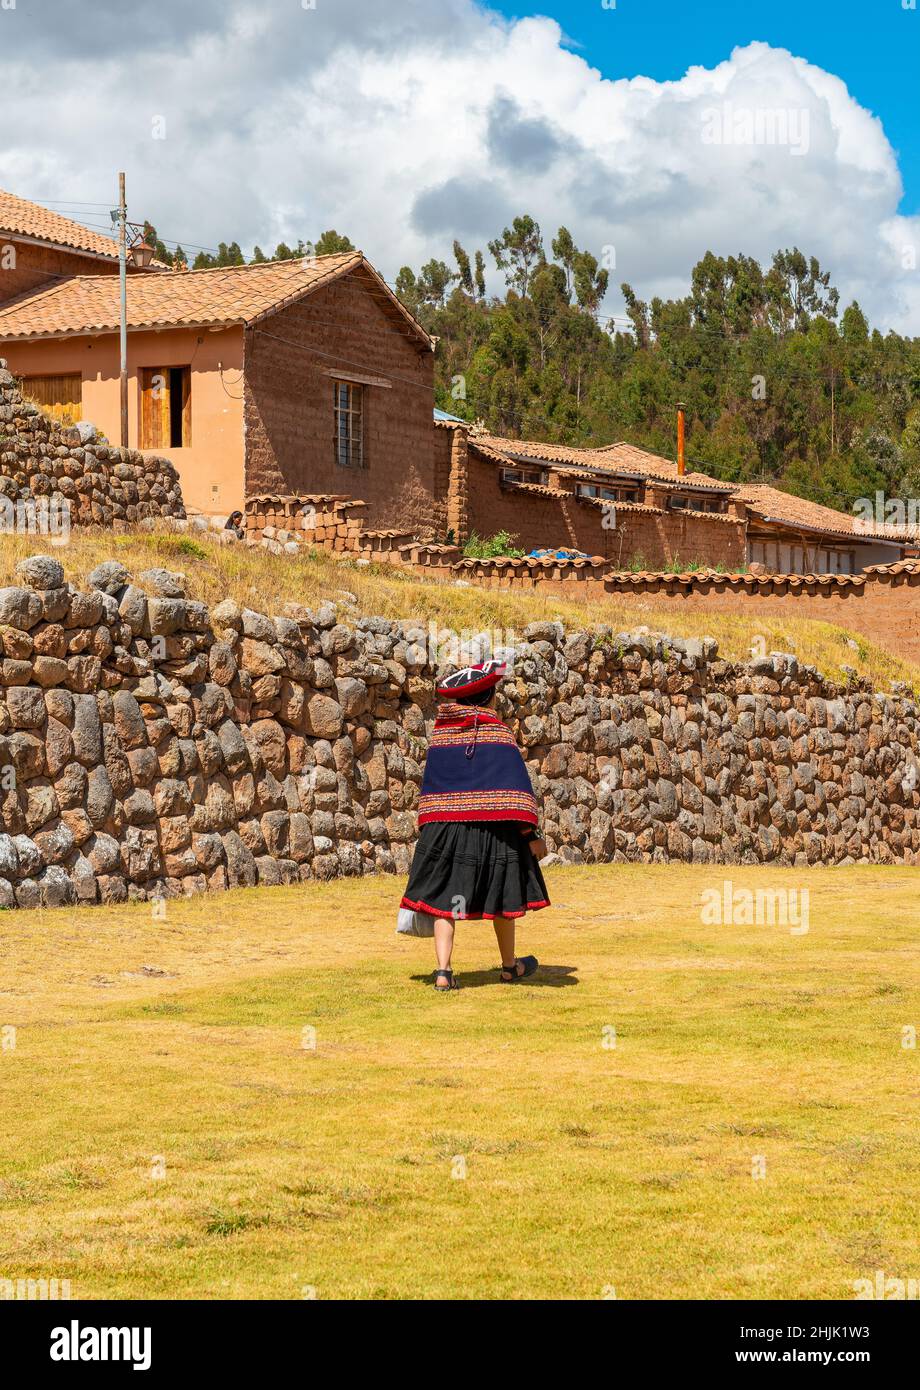 Peruanische indigene quechua-Frau in traditioneller Kleidung, die vor einer inka-Mauer der inka-Ruine Chinchero in Peru läuft. Stockfoto